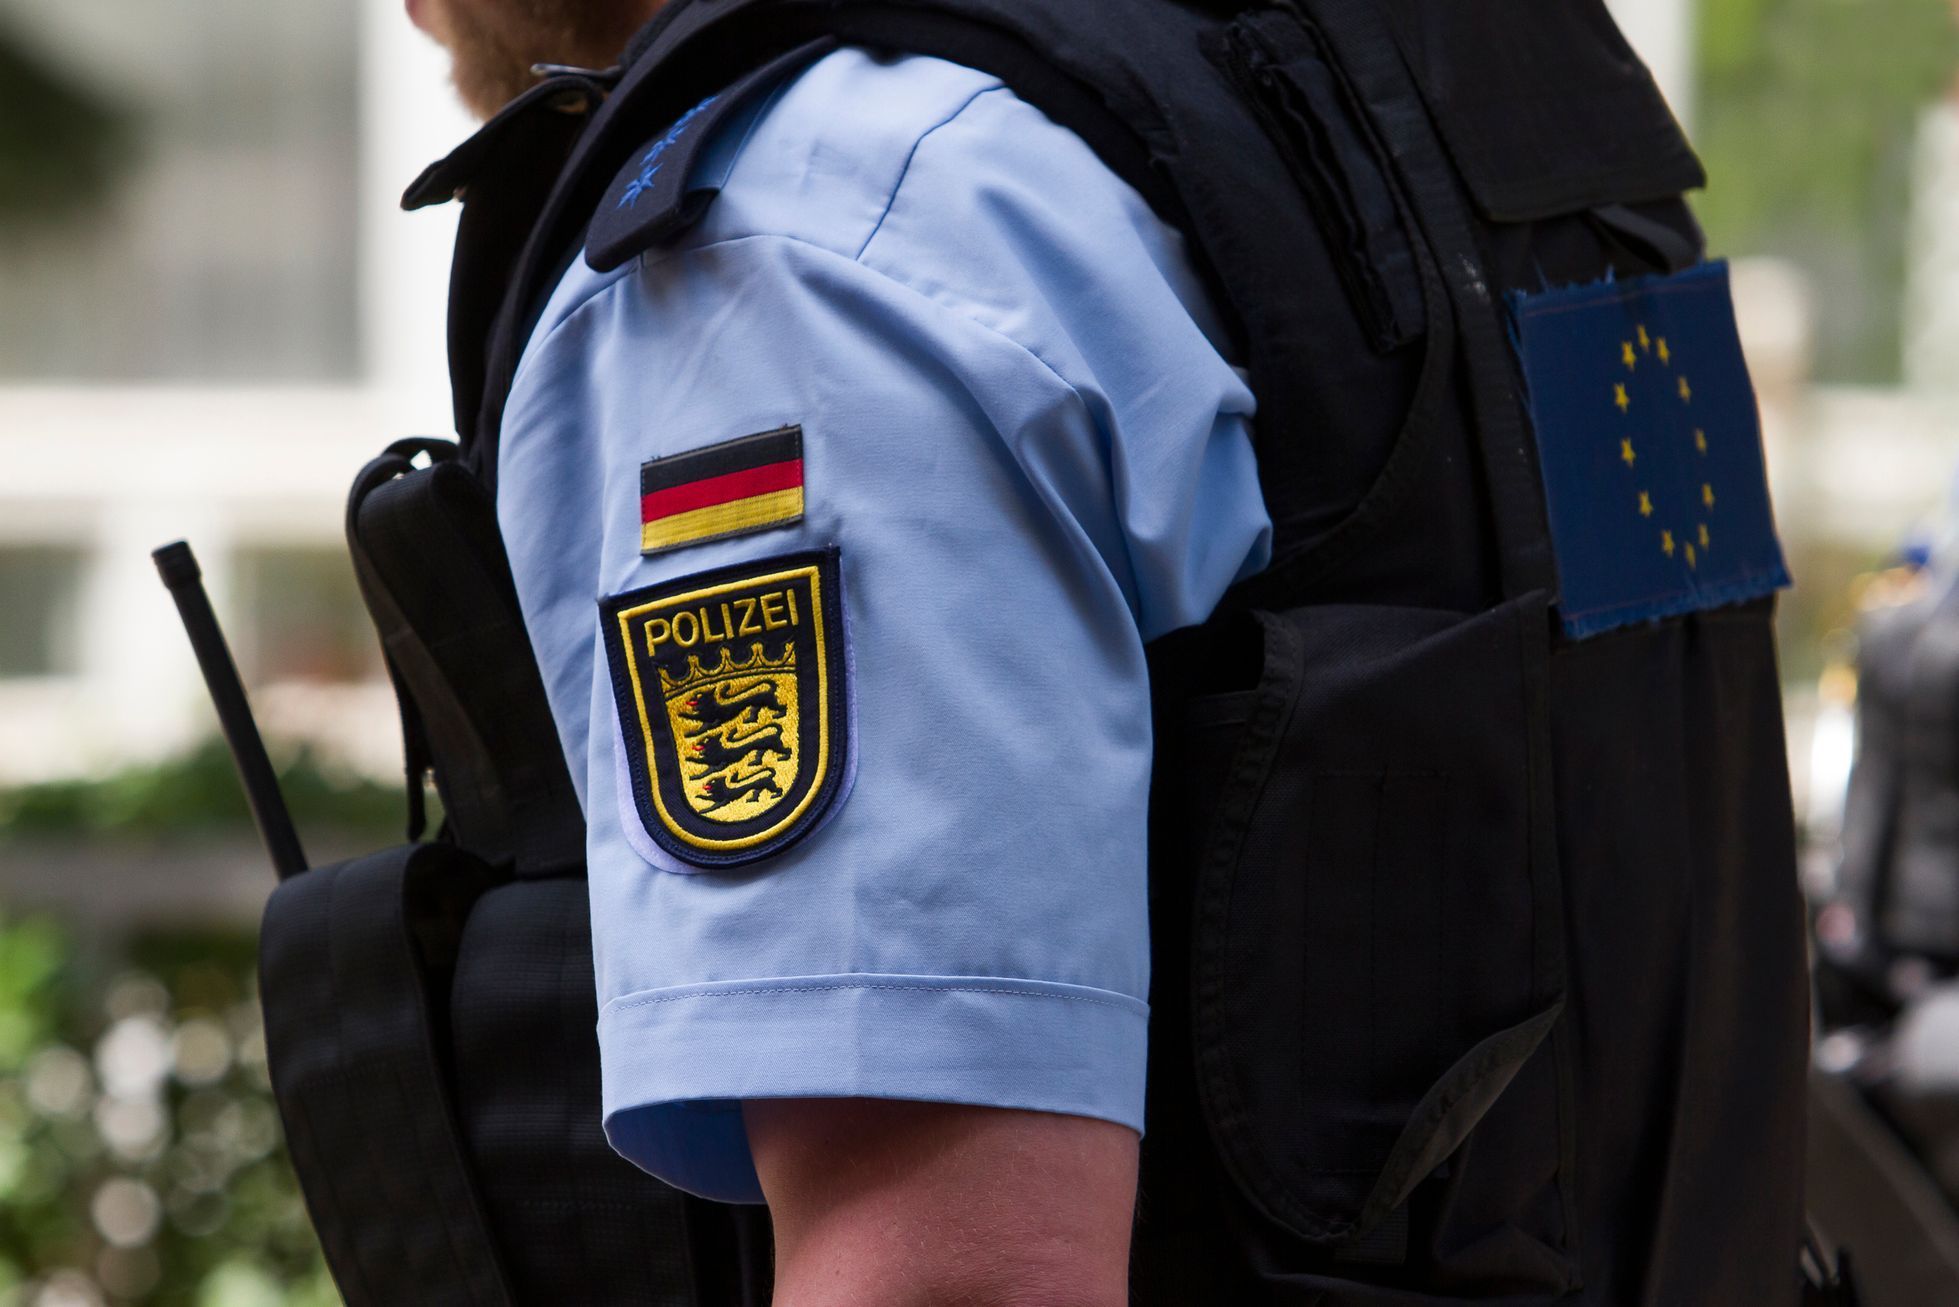 Ilustrační fotografie, policie, Německo, 2018